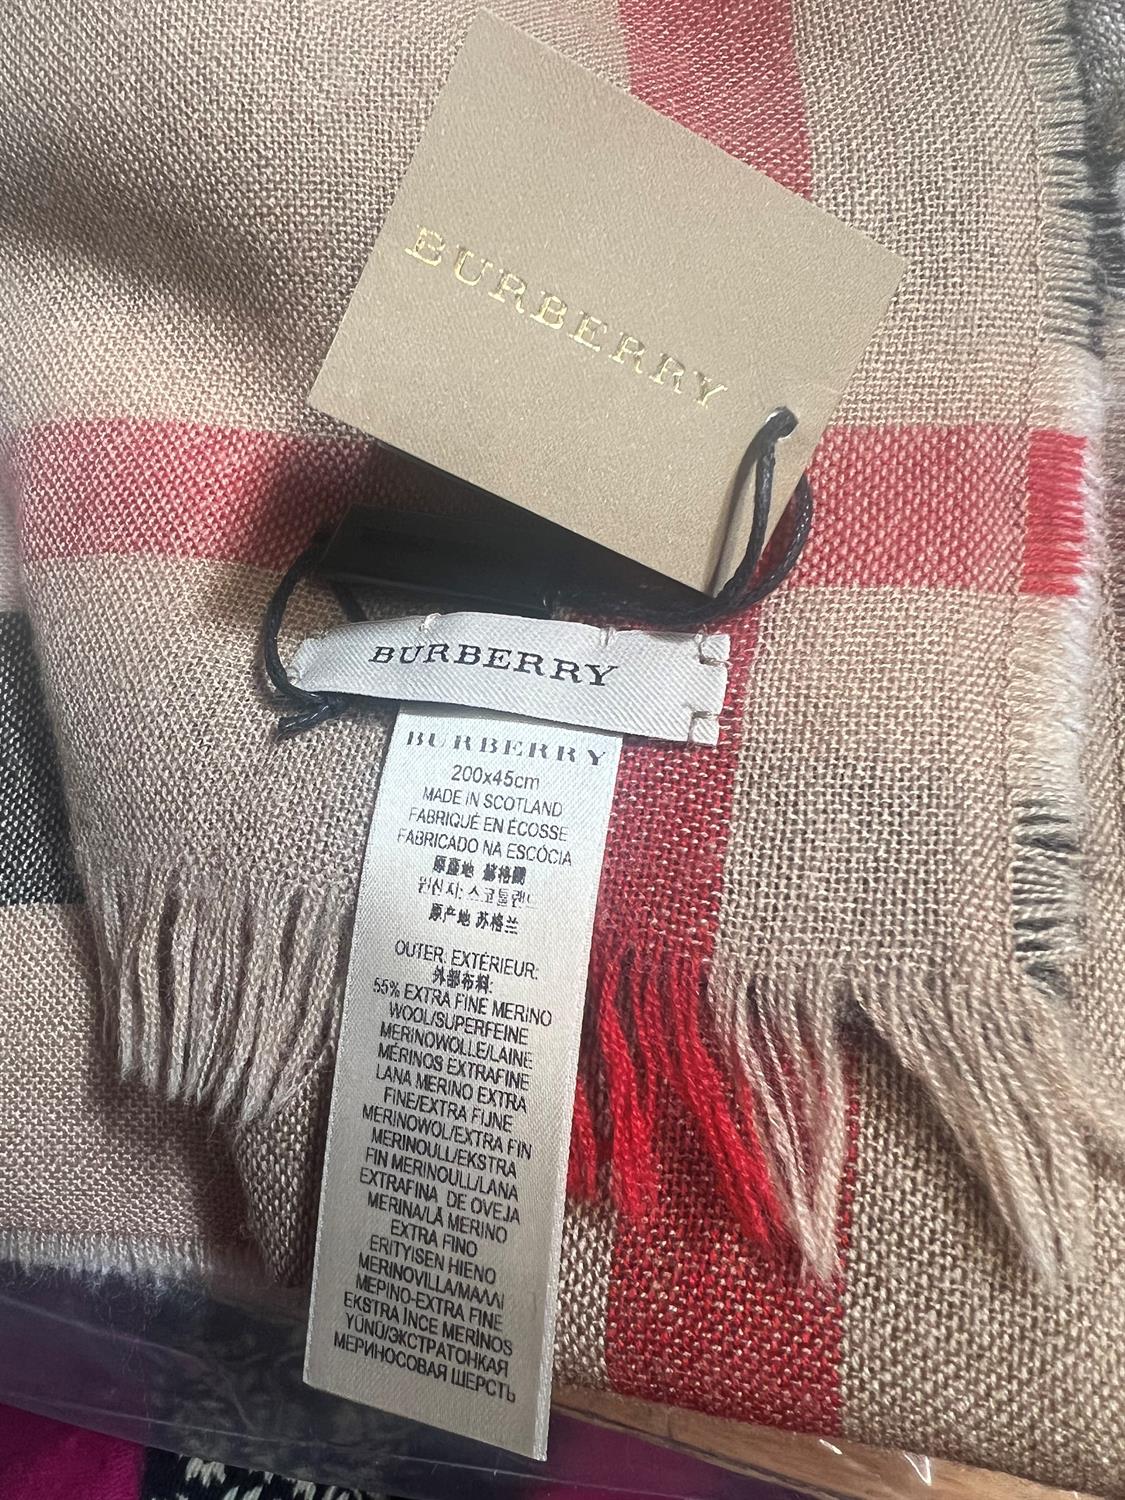 BURBERRY unworn Marino wool scarf in original packaging - Image 4 of 4